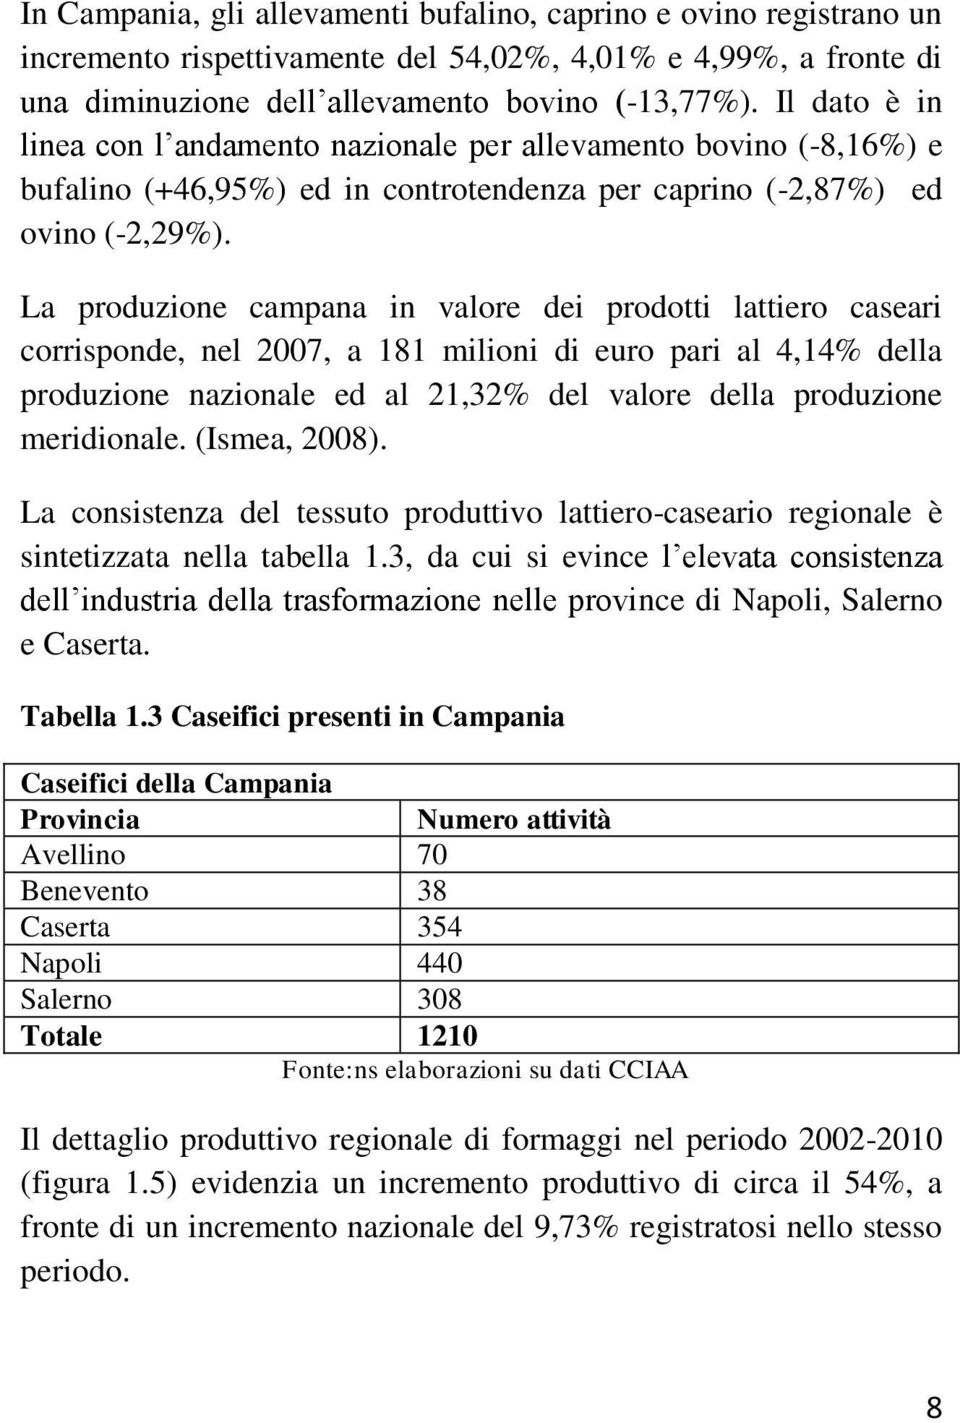 La produzione campana in valore dei prodotti lattiero caseari corrisponde, nel 2007, a 181 milioni di euro pari al 4,14% della produzione nazionale ed al 21,32% del valore della produzione